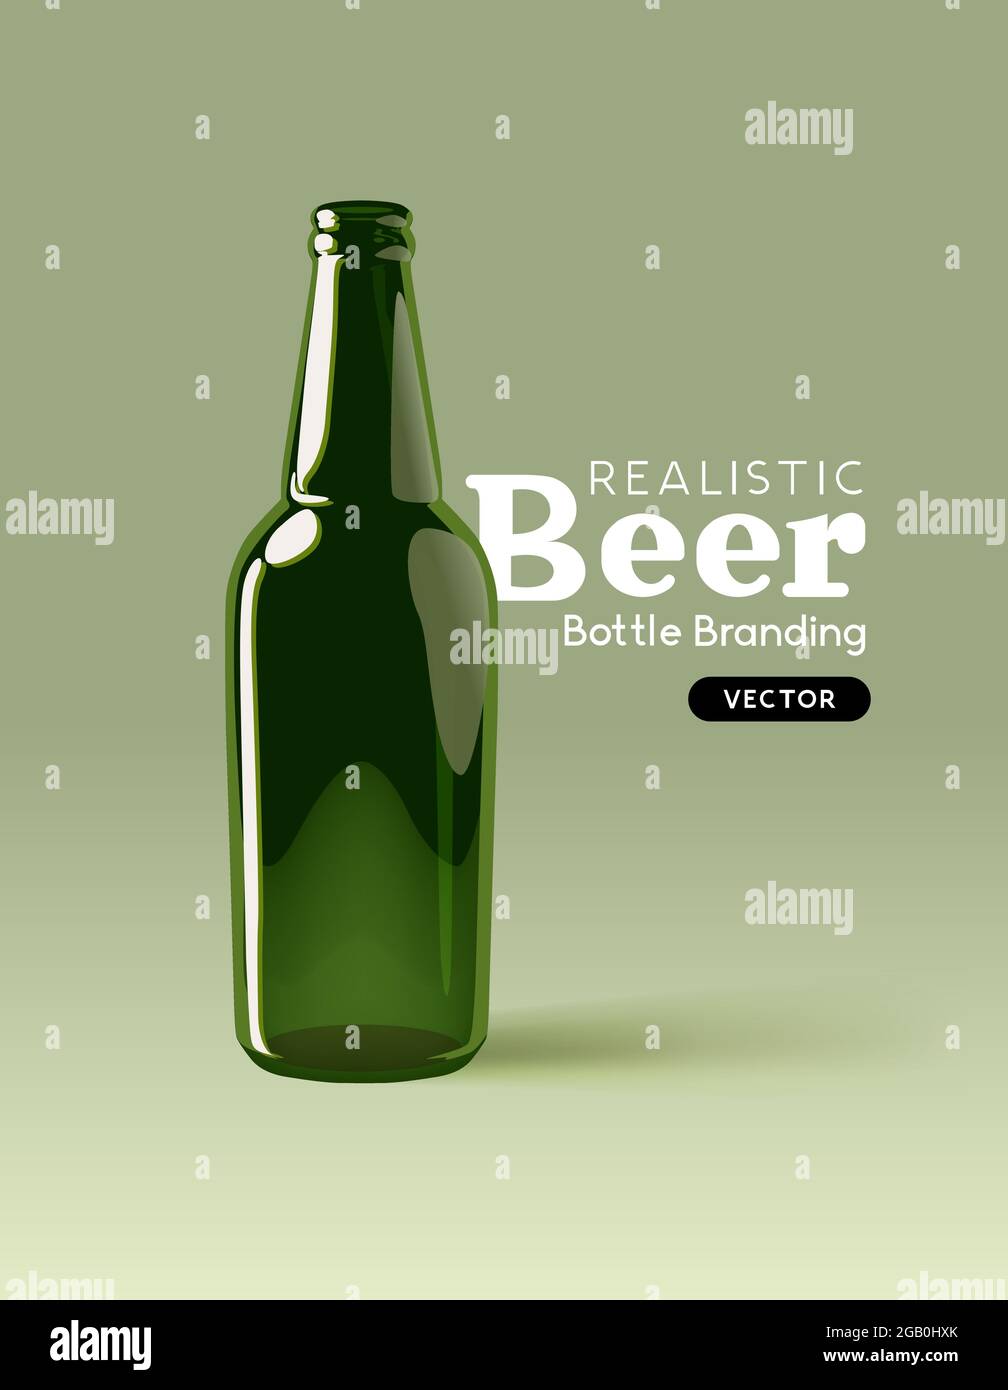 Eine realistische Bierflasche aus grünem Glas zum Verspotten von Designs. Moderne Marketingvorlage für Getränke Vektorgrafik Stock Vektor